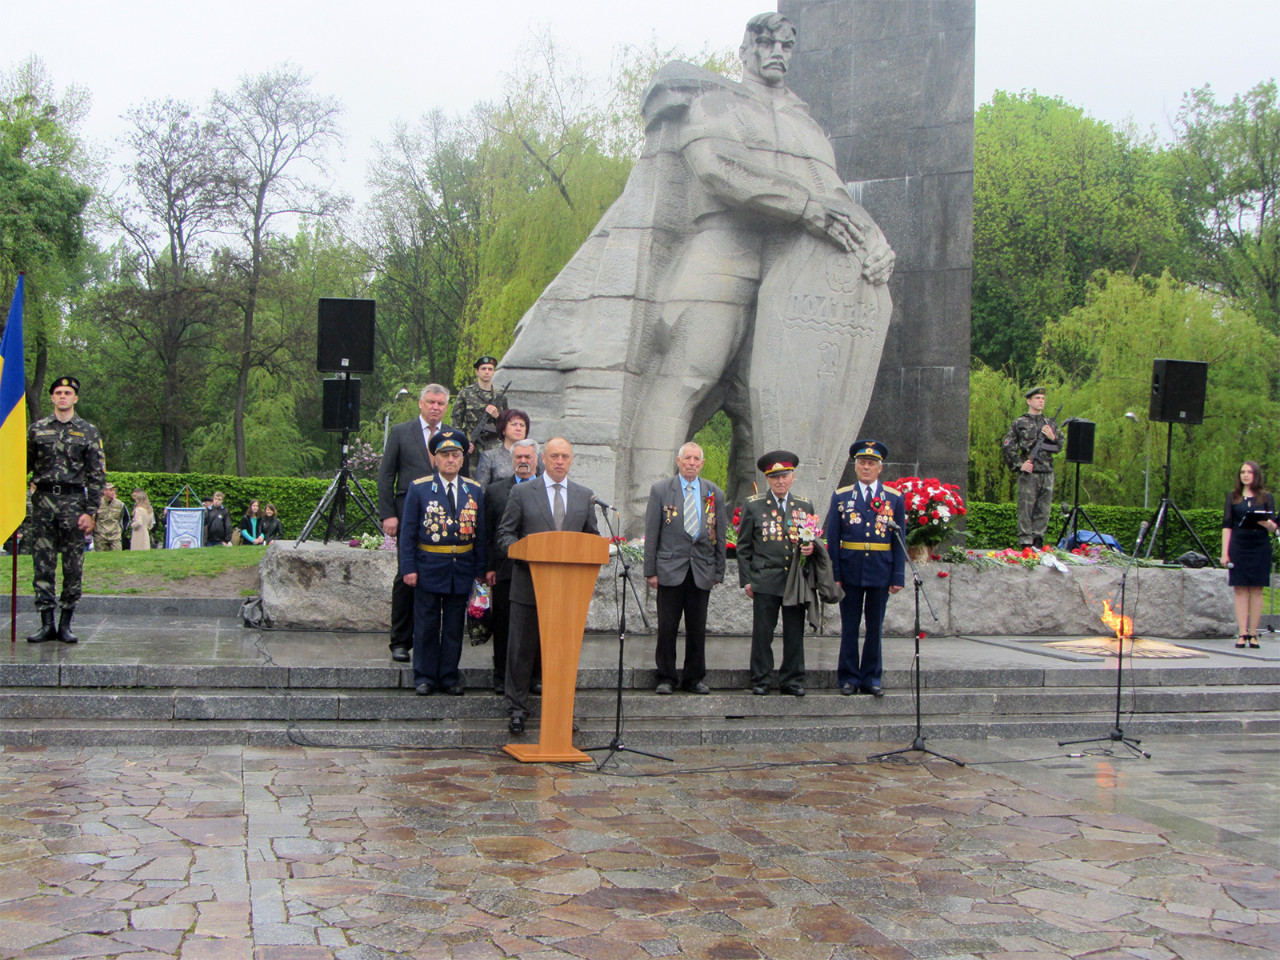 Мер міста Олександр Мамай в урочистій промові привітав громадян та ветеранів із 70-річчям перемоги у Другій світовій війні